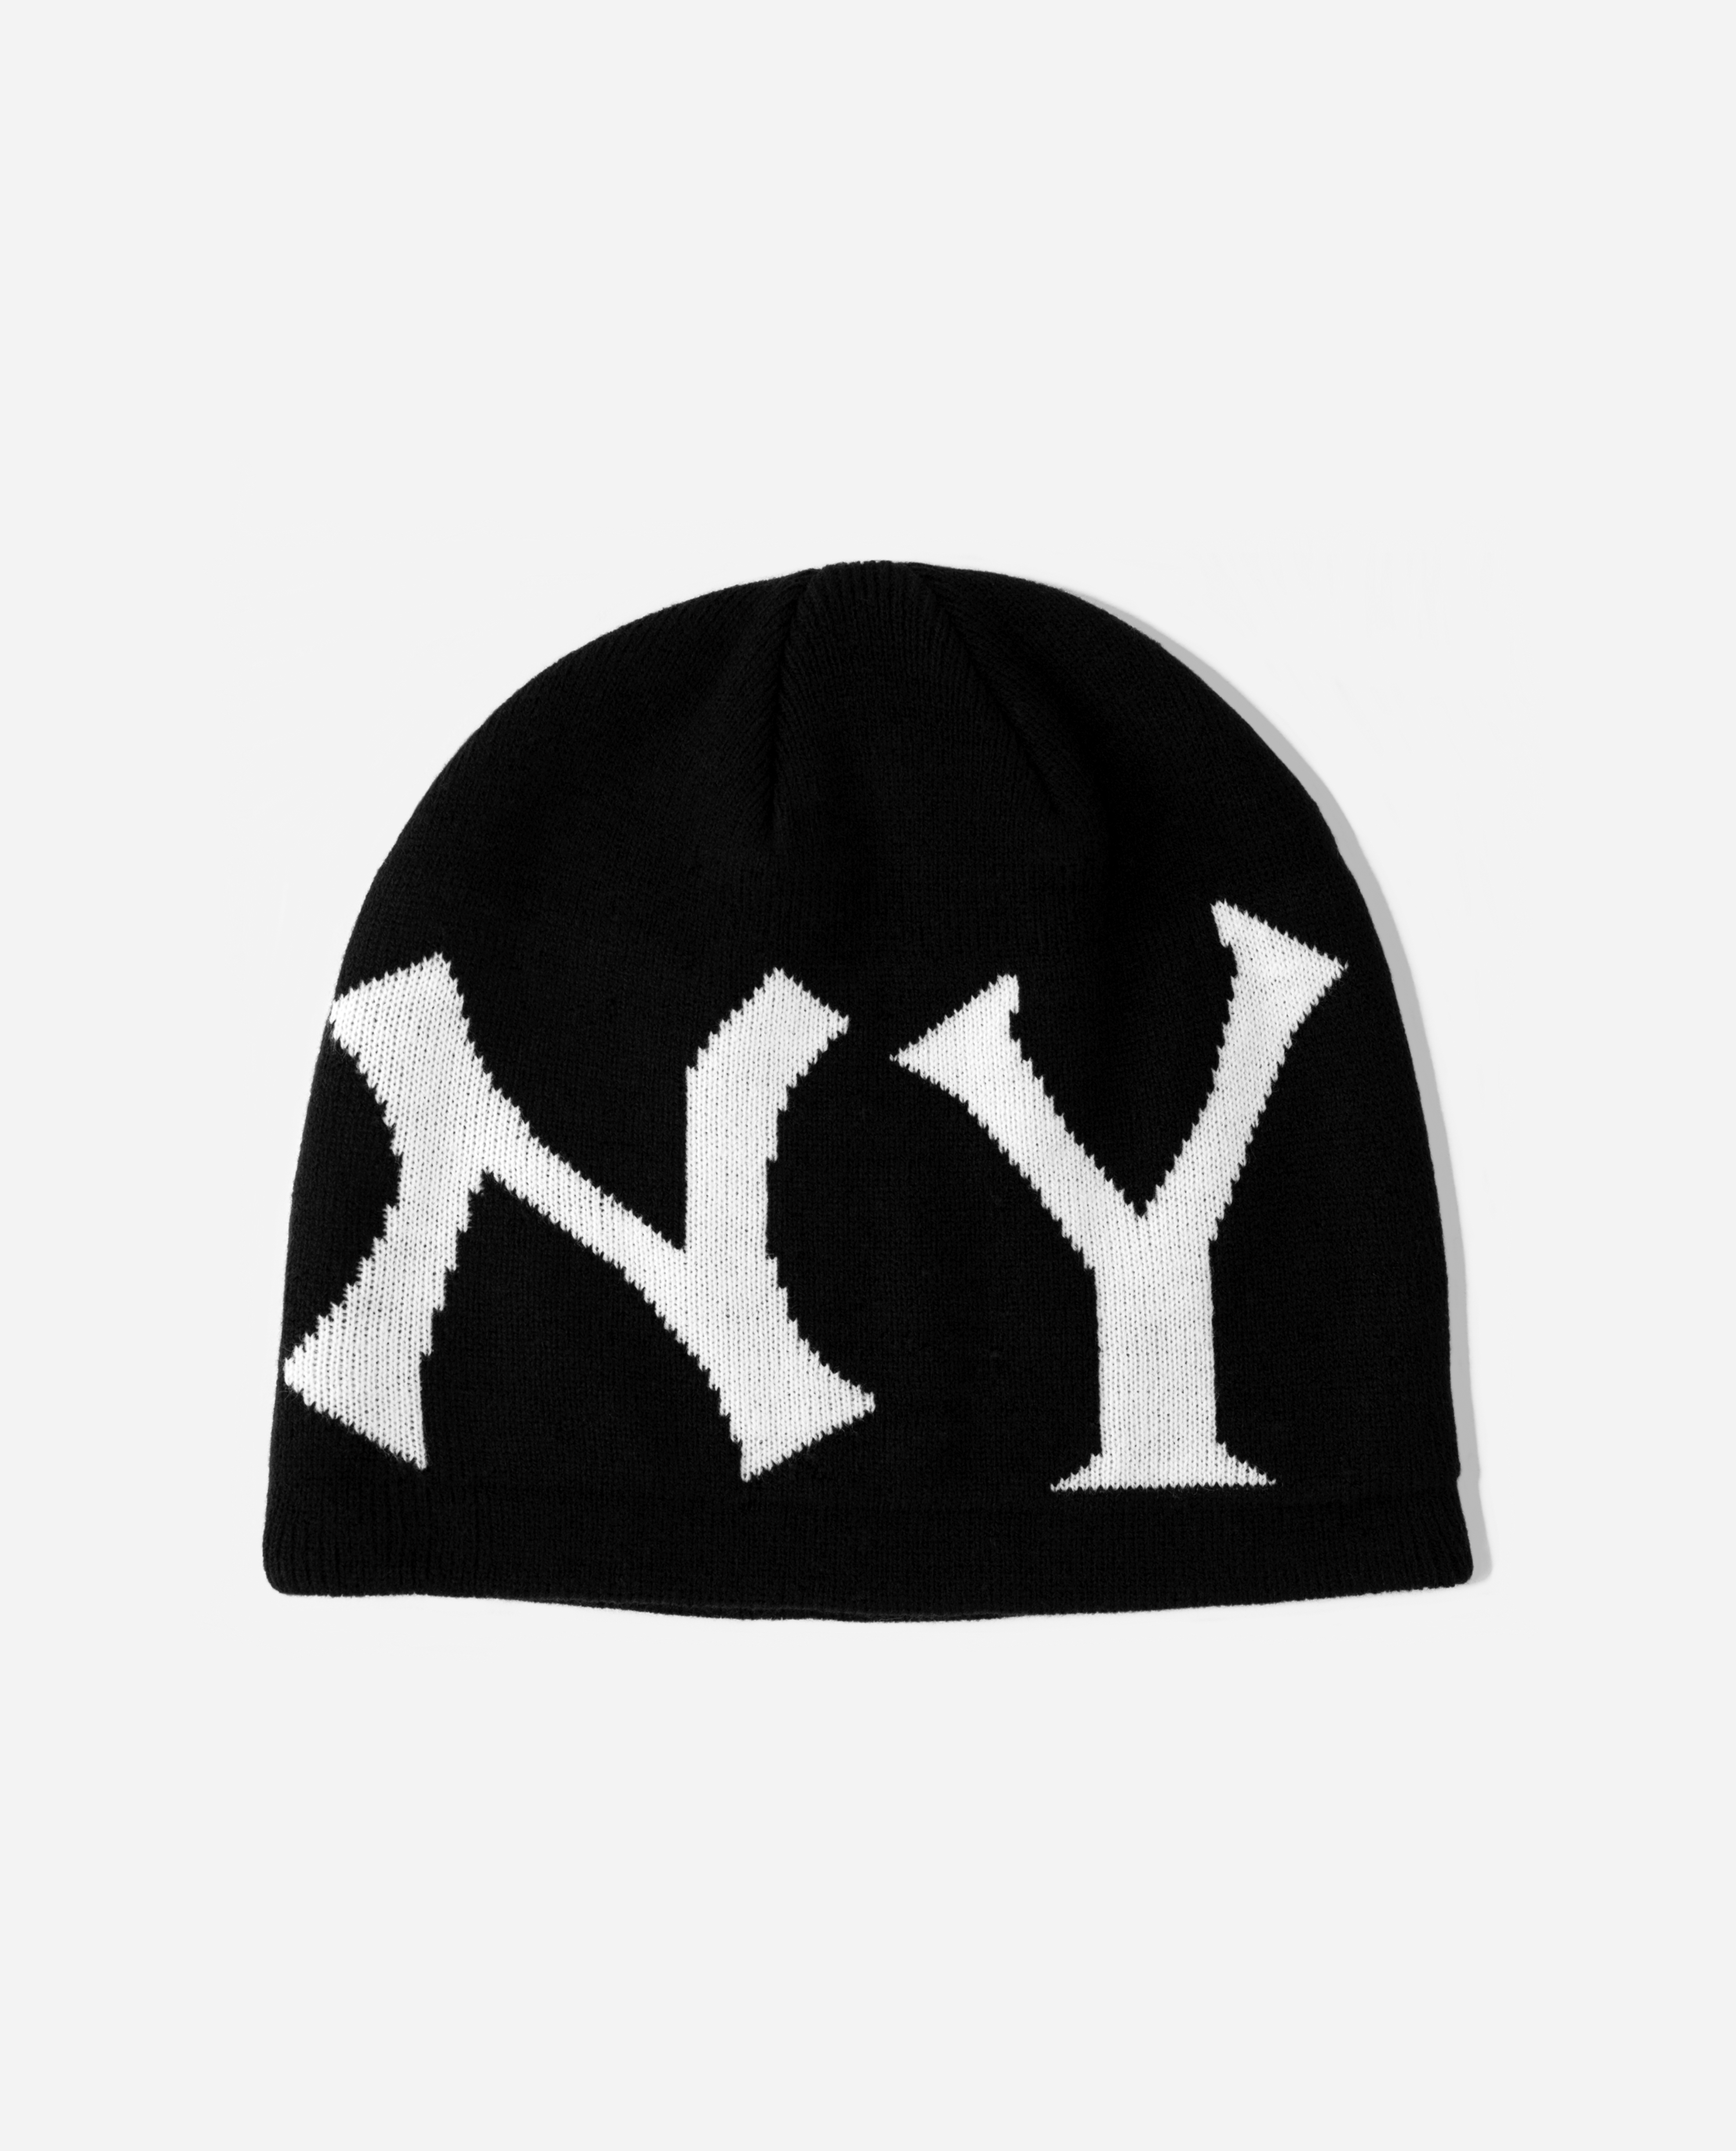 oMA NY SKULL CAP (BLACK/WHITE)